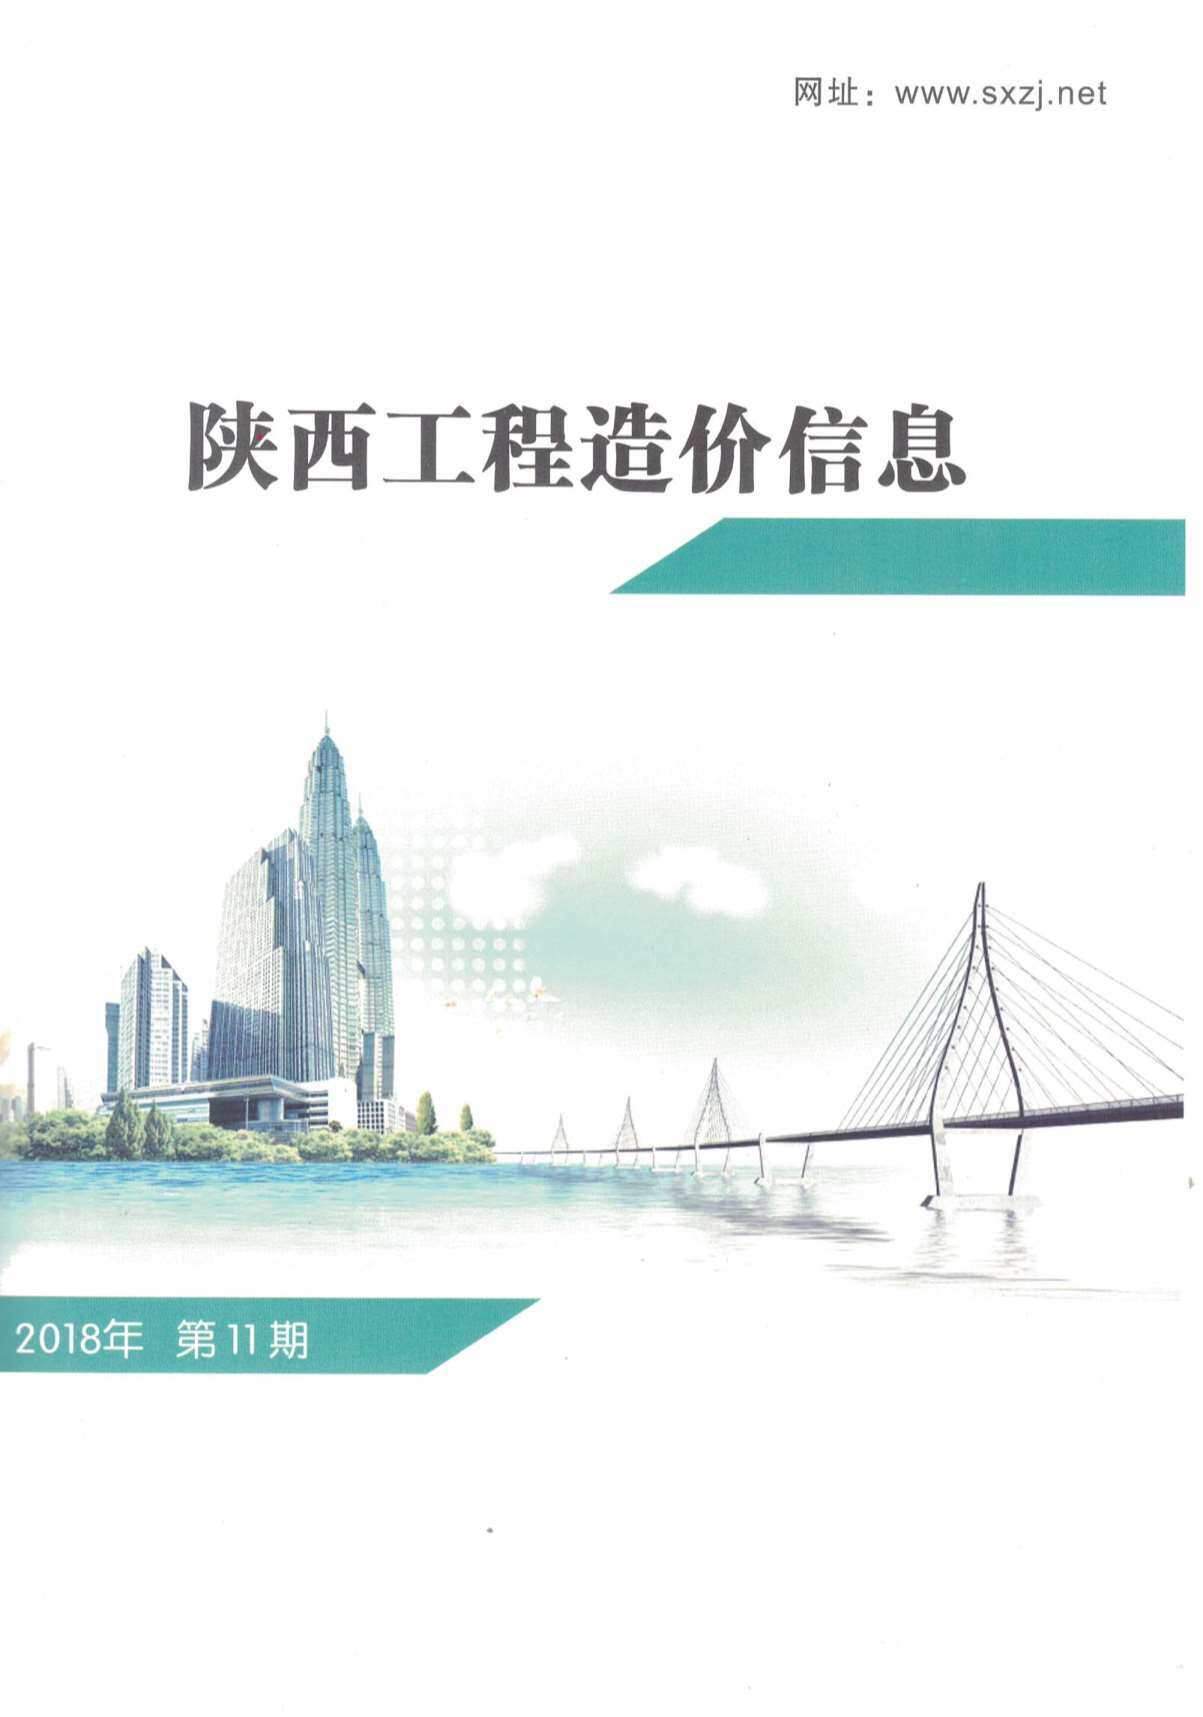 陕西省2018年11月工程造价信息期刊